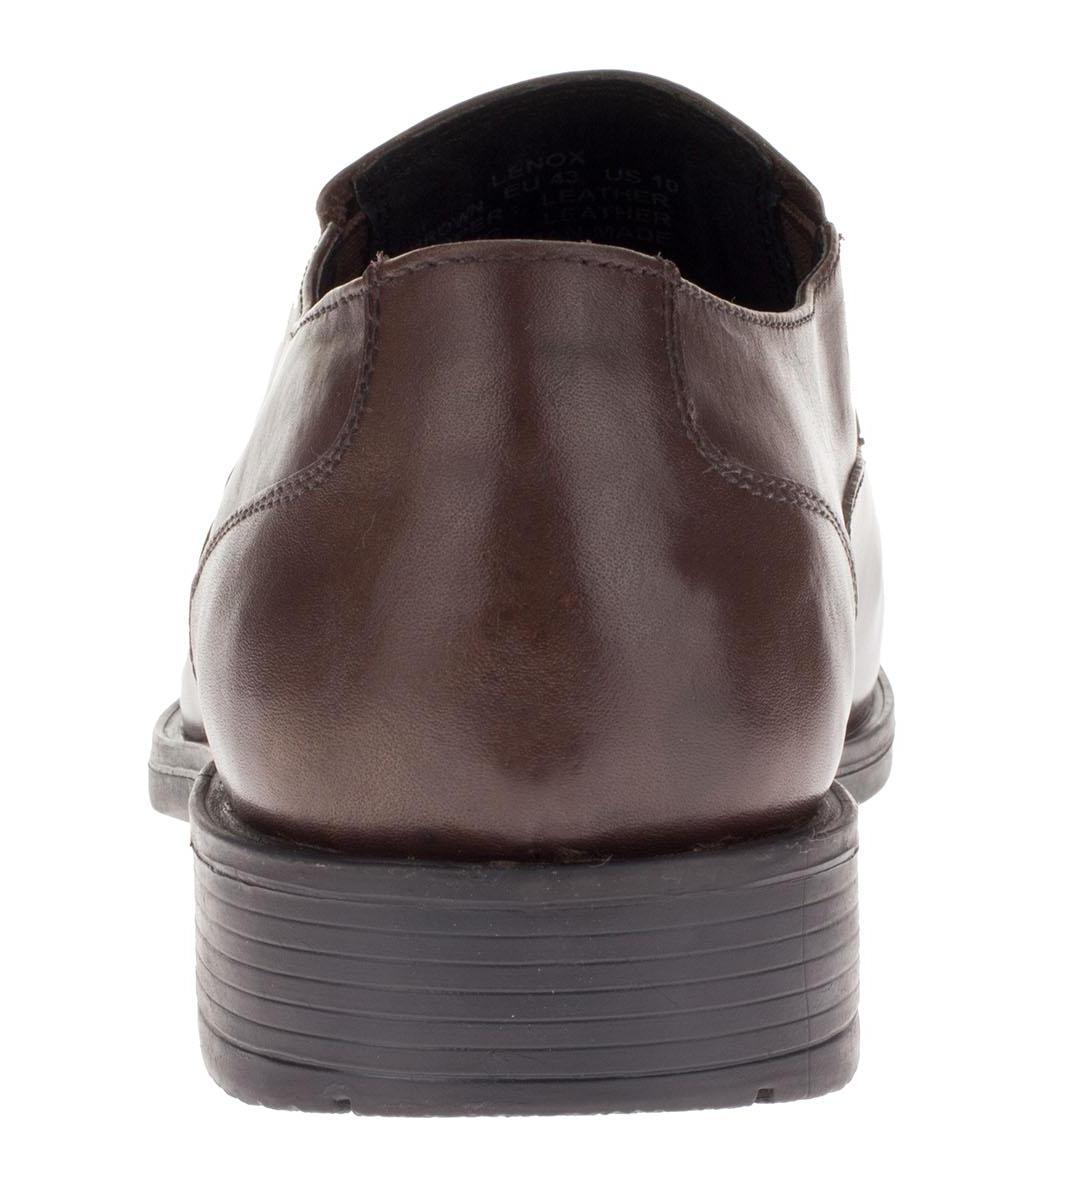 Mens Lenox Brown Leather Comfort Dress Shoe DTI DARYA - image 3 of 7